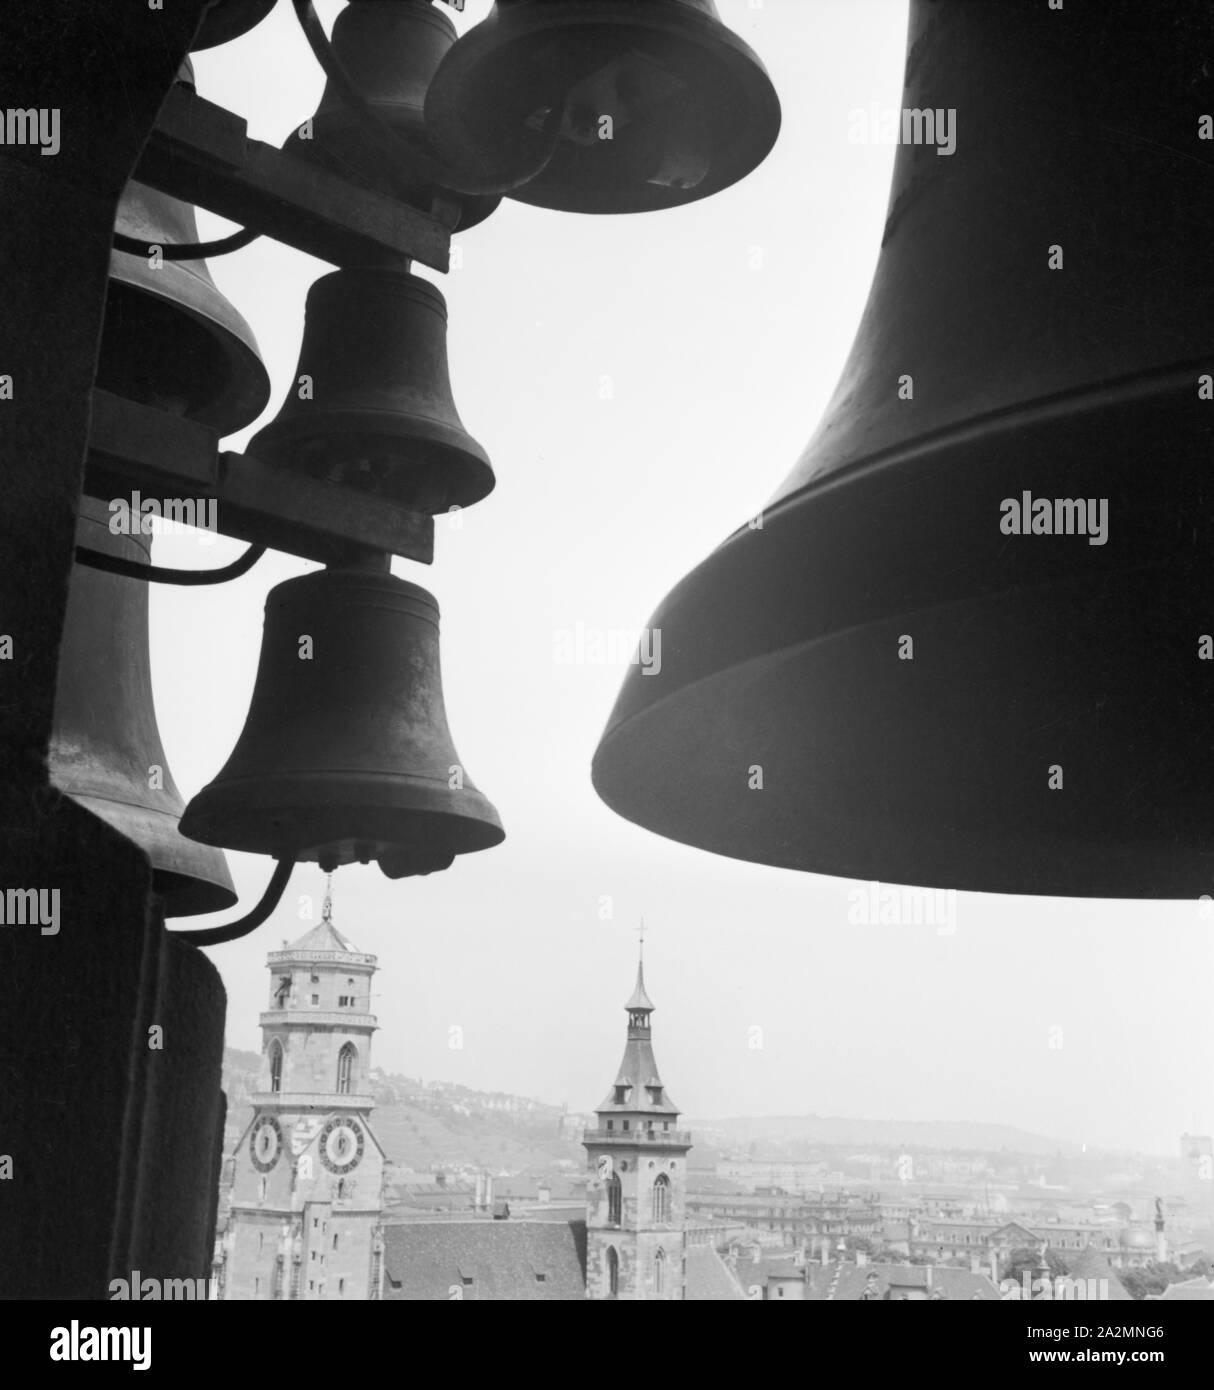 Glocken mit Blick auf die Stadt Baden Baden, Deutschland 1930er Jahre. Bells with view to the city of Baden Baden, Germany 1930s. Stock Photo